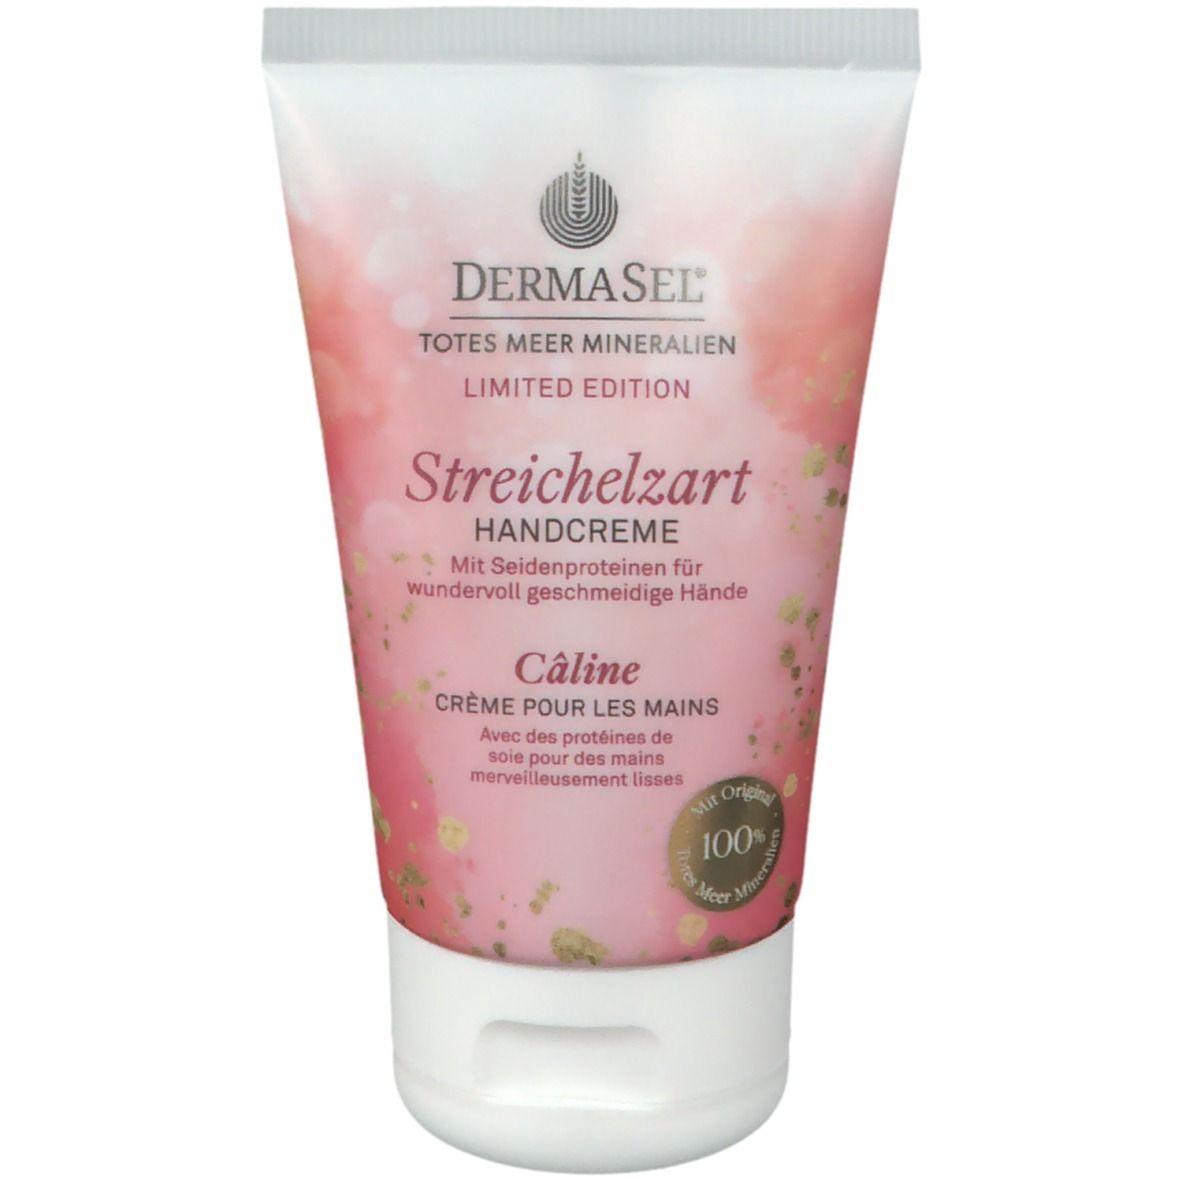 DERMASEL® Streichelzart Handcreme Limited Edition